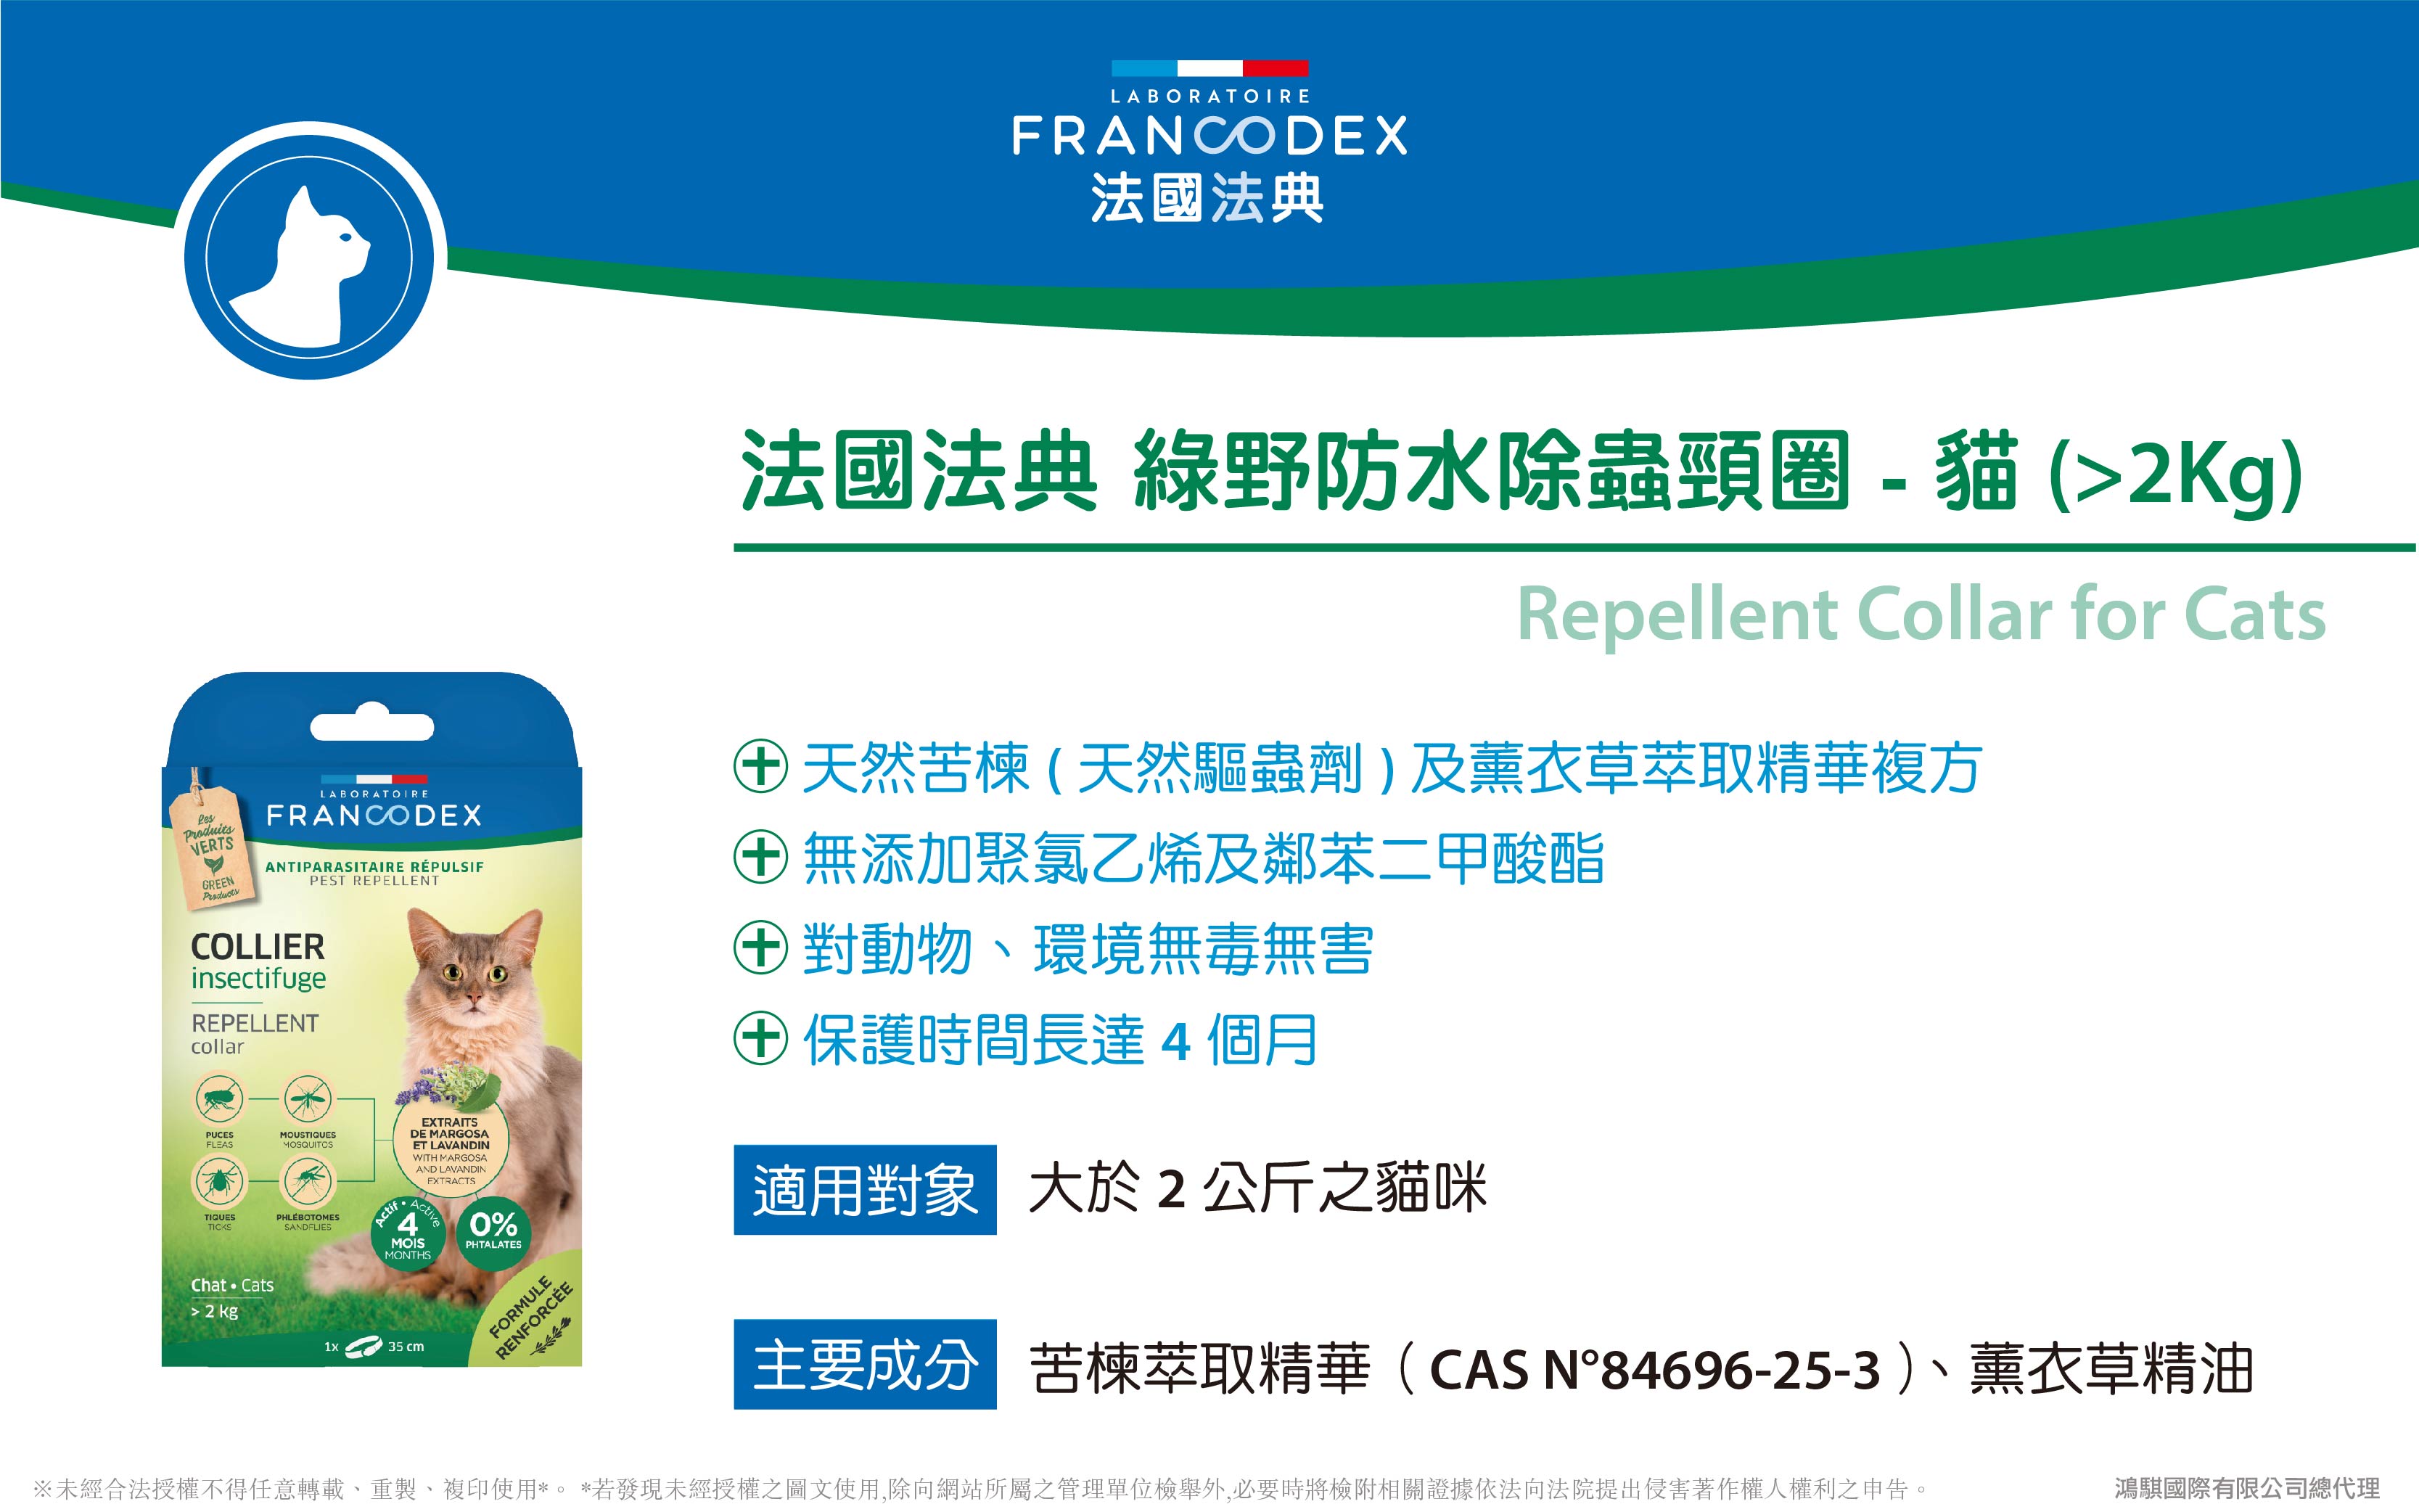 【Francodex】官網-產品介紹_08法國法典綠野防水除蟲頸圈-貓(大於2kg)